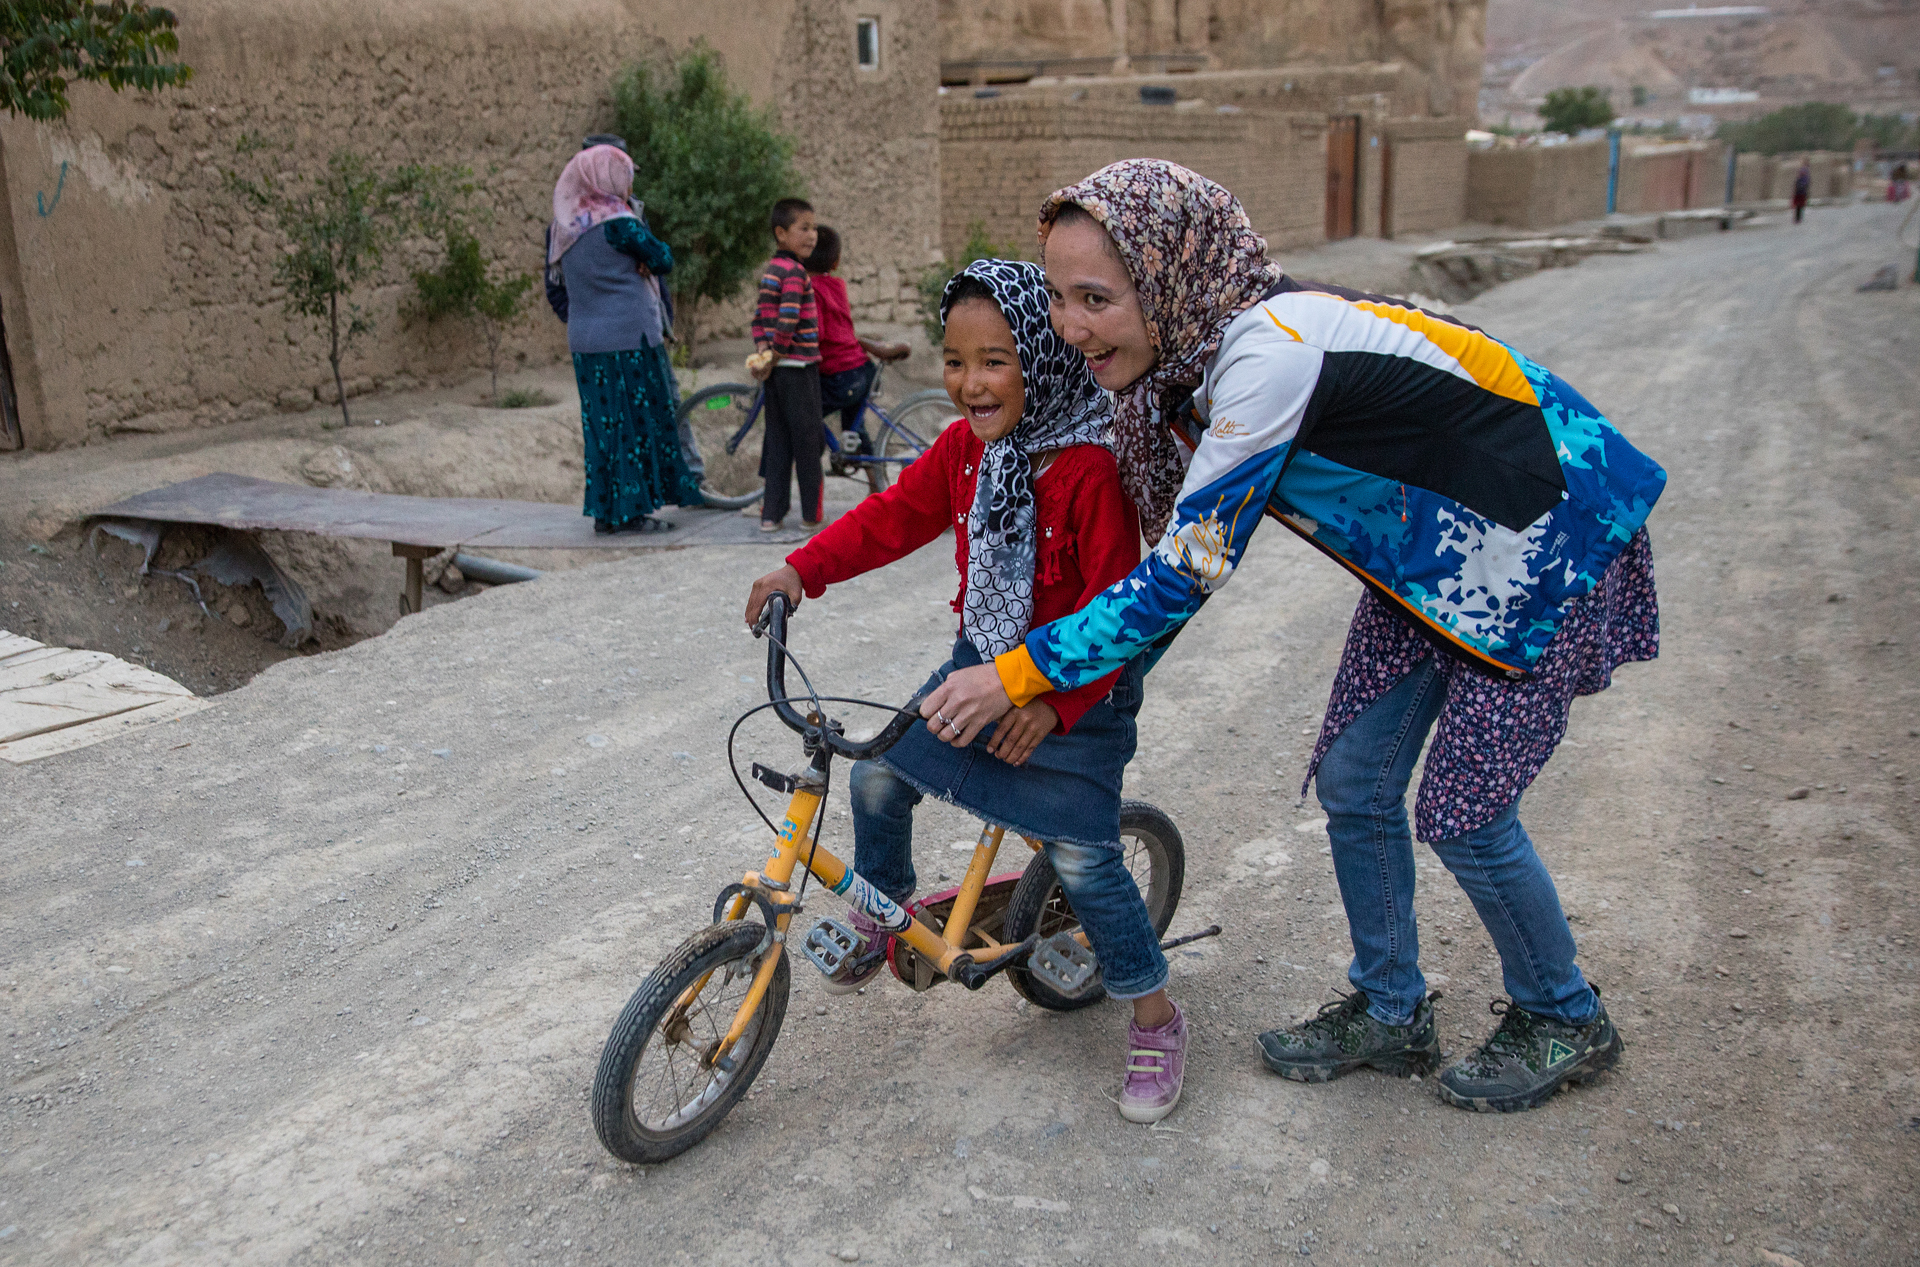 Las mujeres bajo el régimen talibán no podían andar en bicicleta